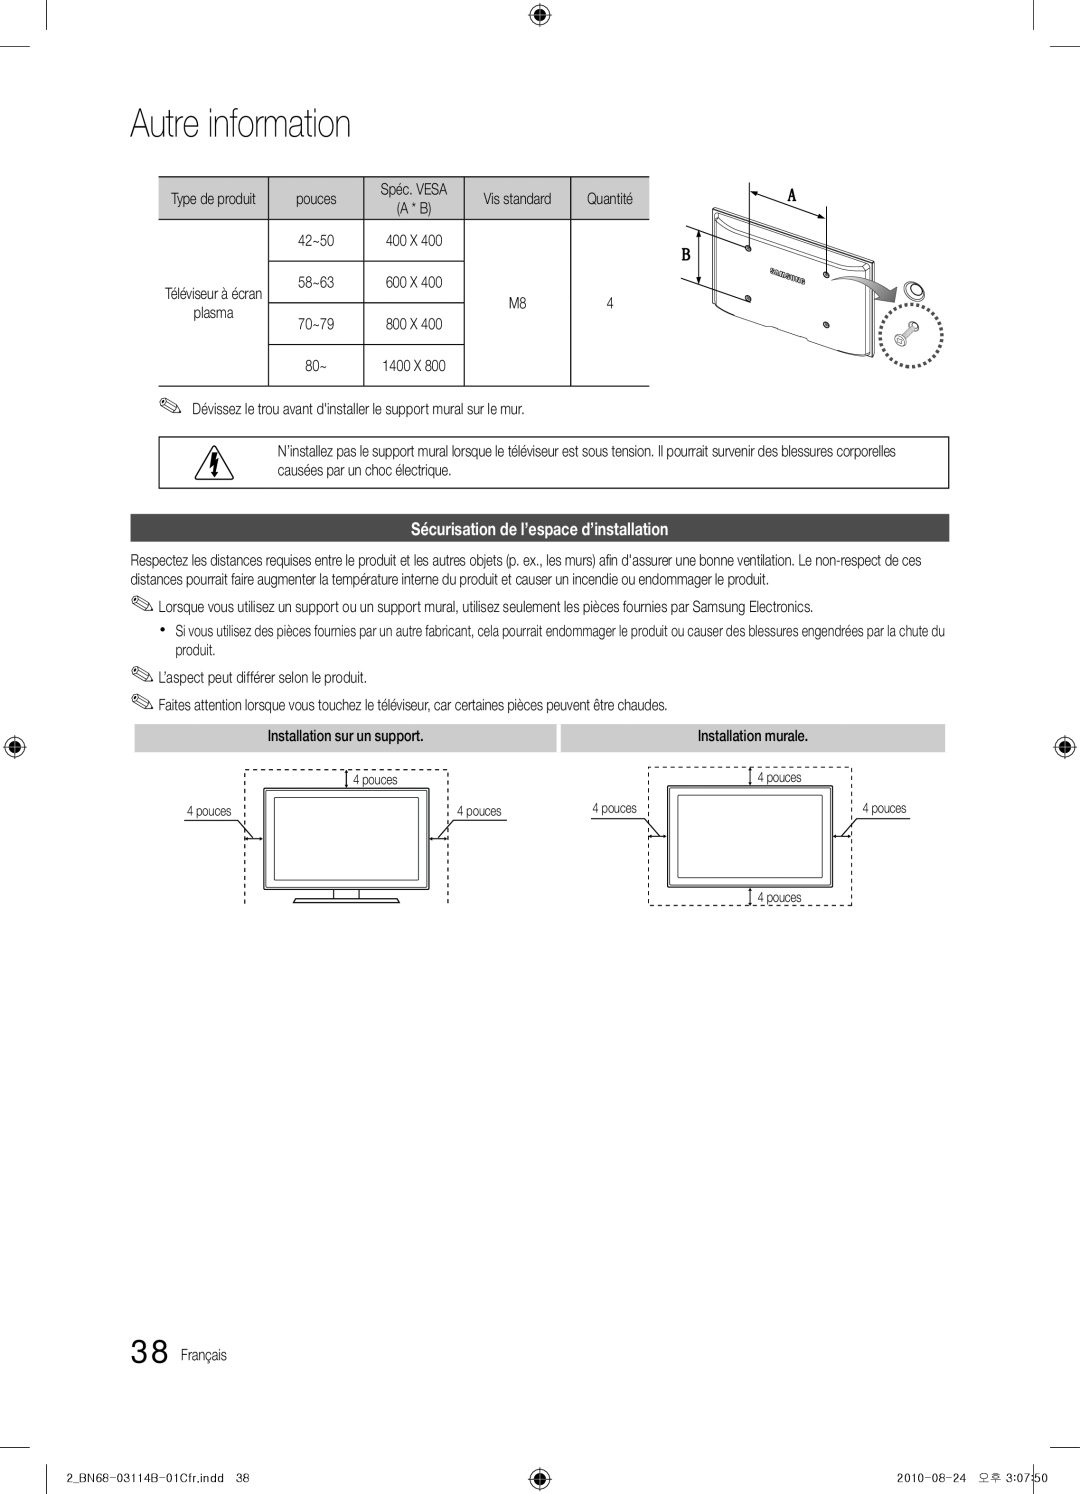 Samsung BN68-03114B-01, PN50C490, Series P4+ 490 user manual Sécurisation de l’espace d’installation, Autre information 